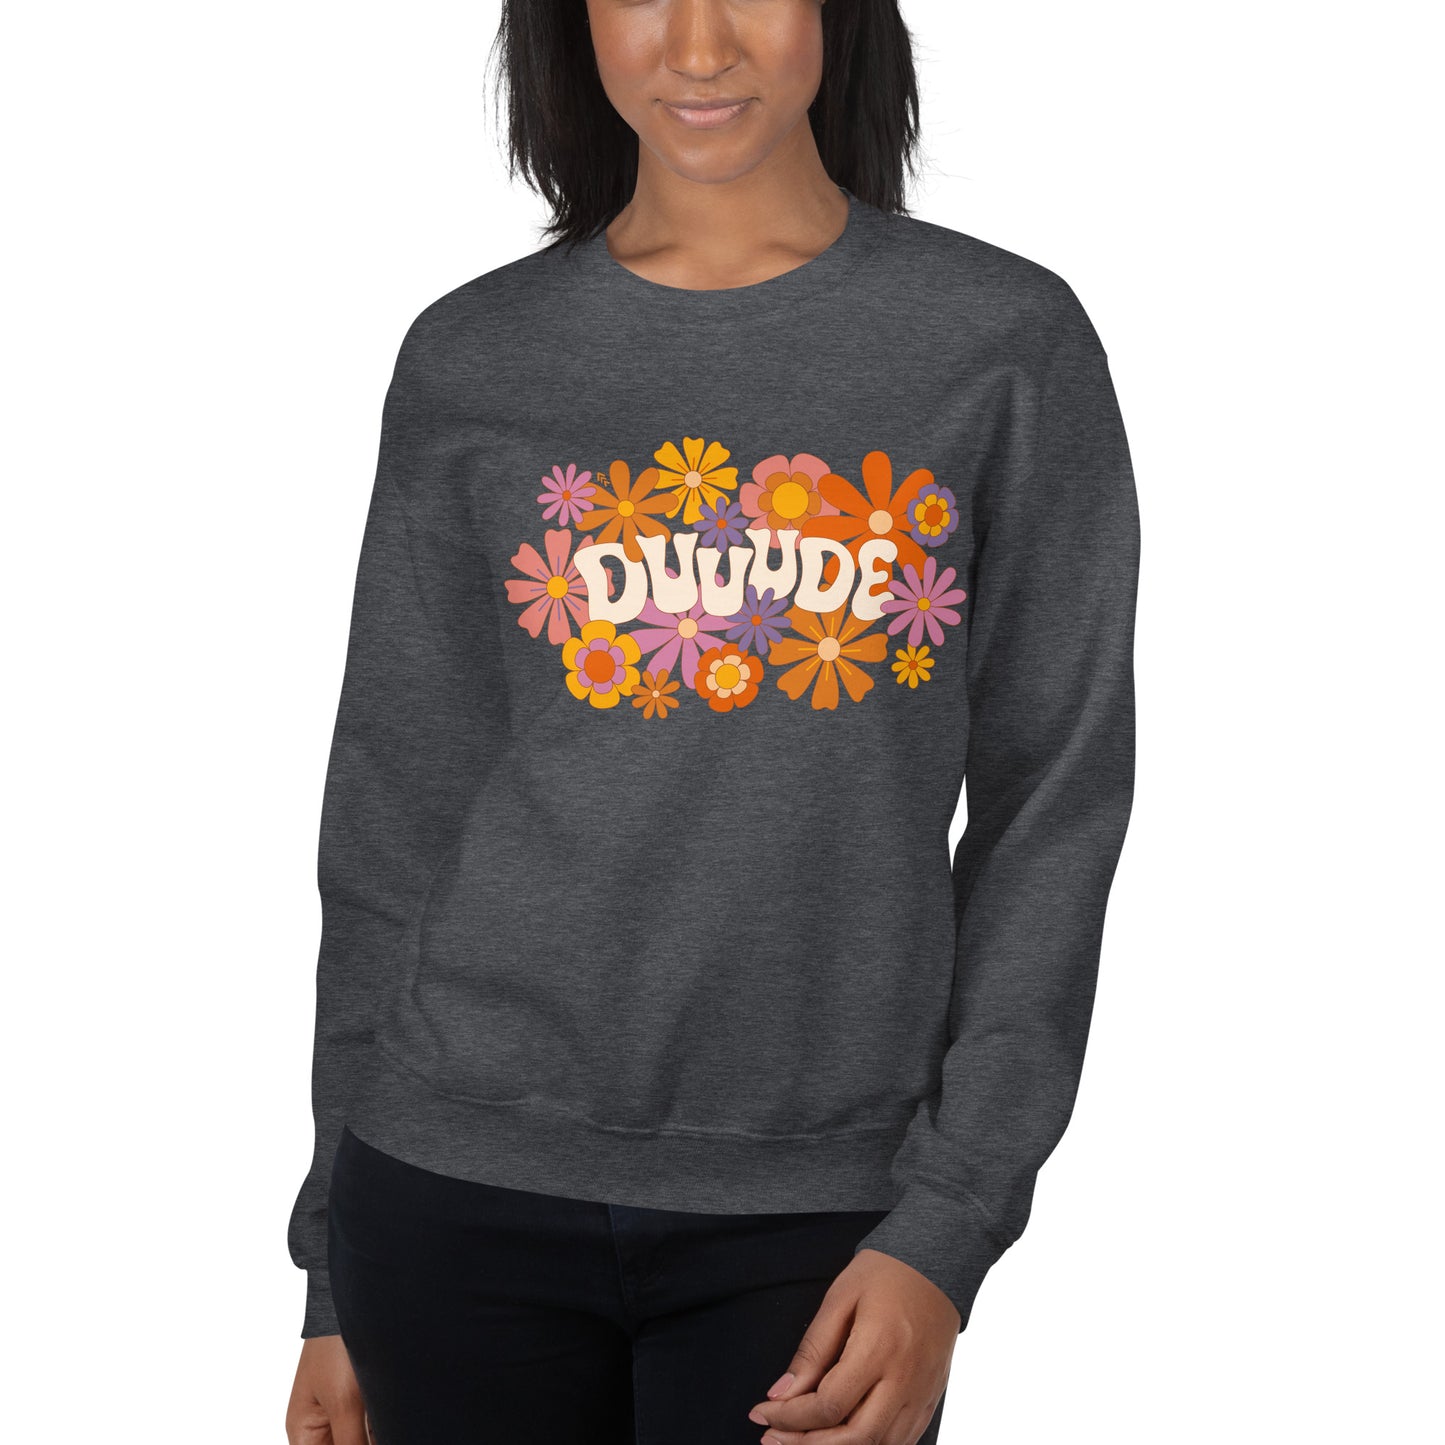 Dude — Adult Unisex Sweatshirt